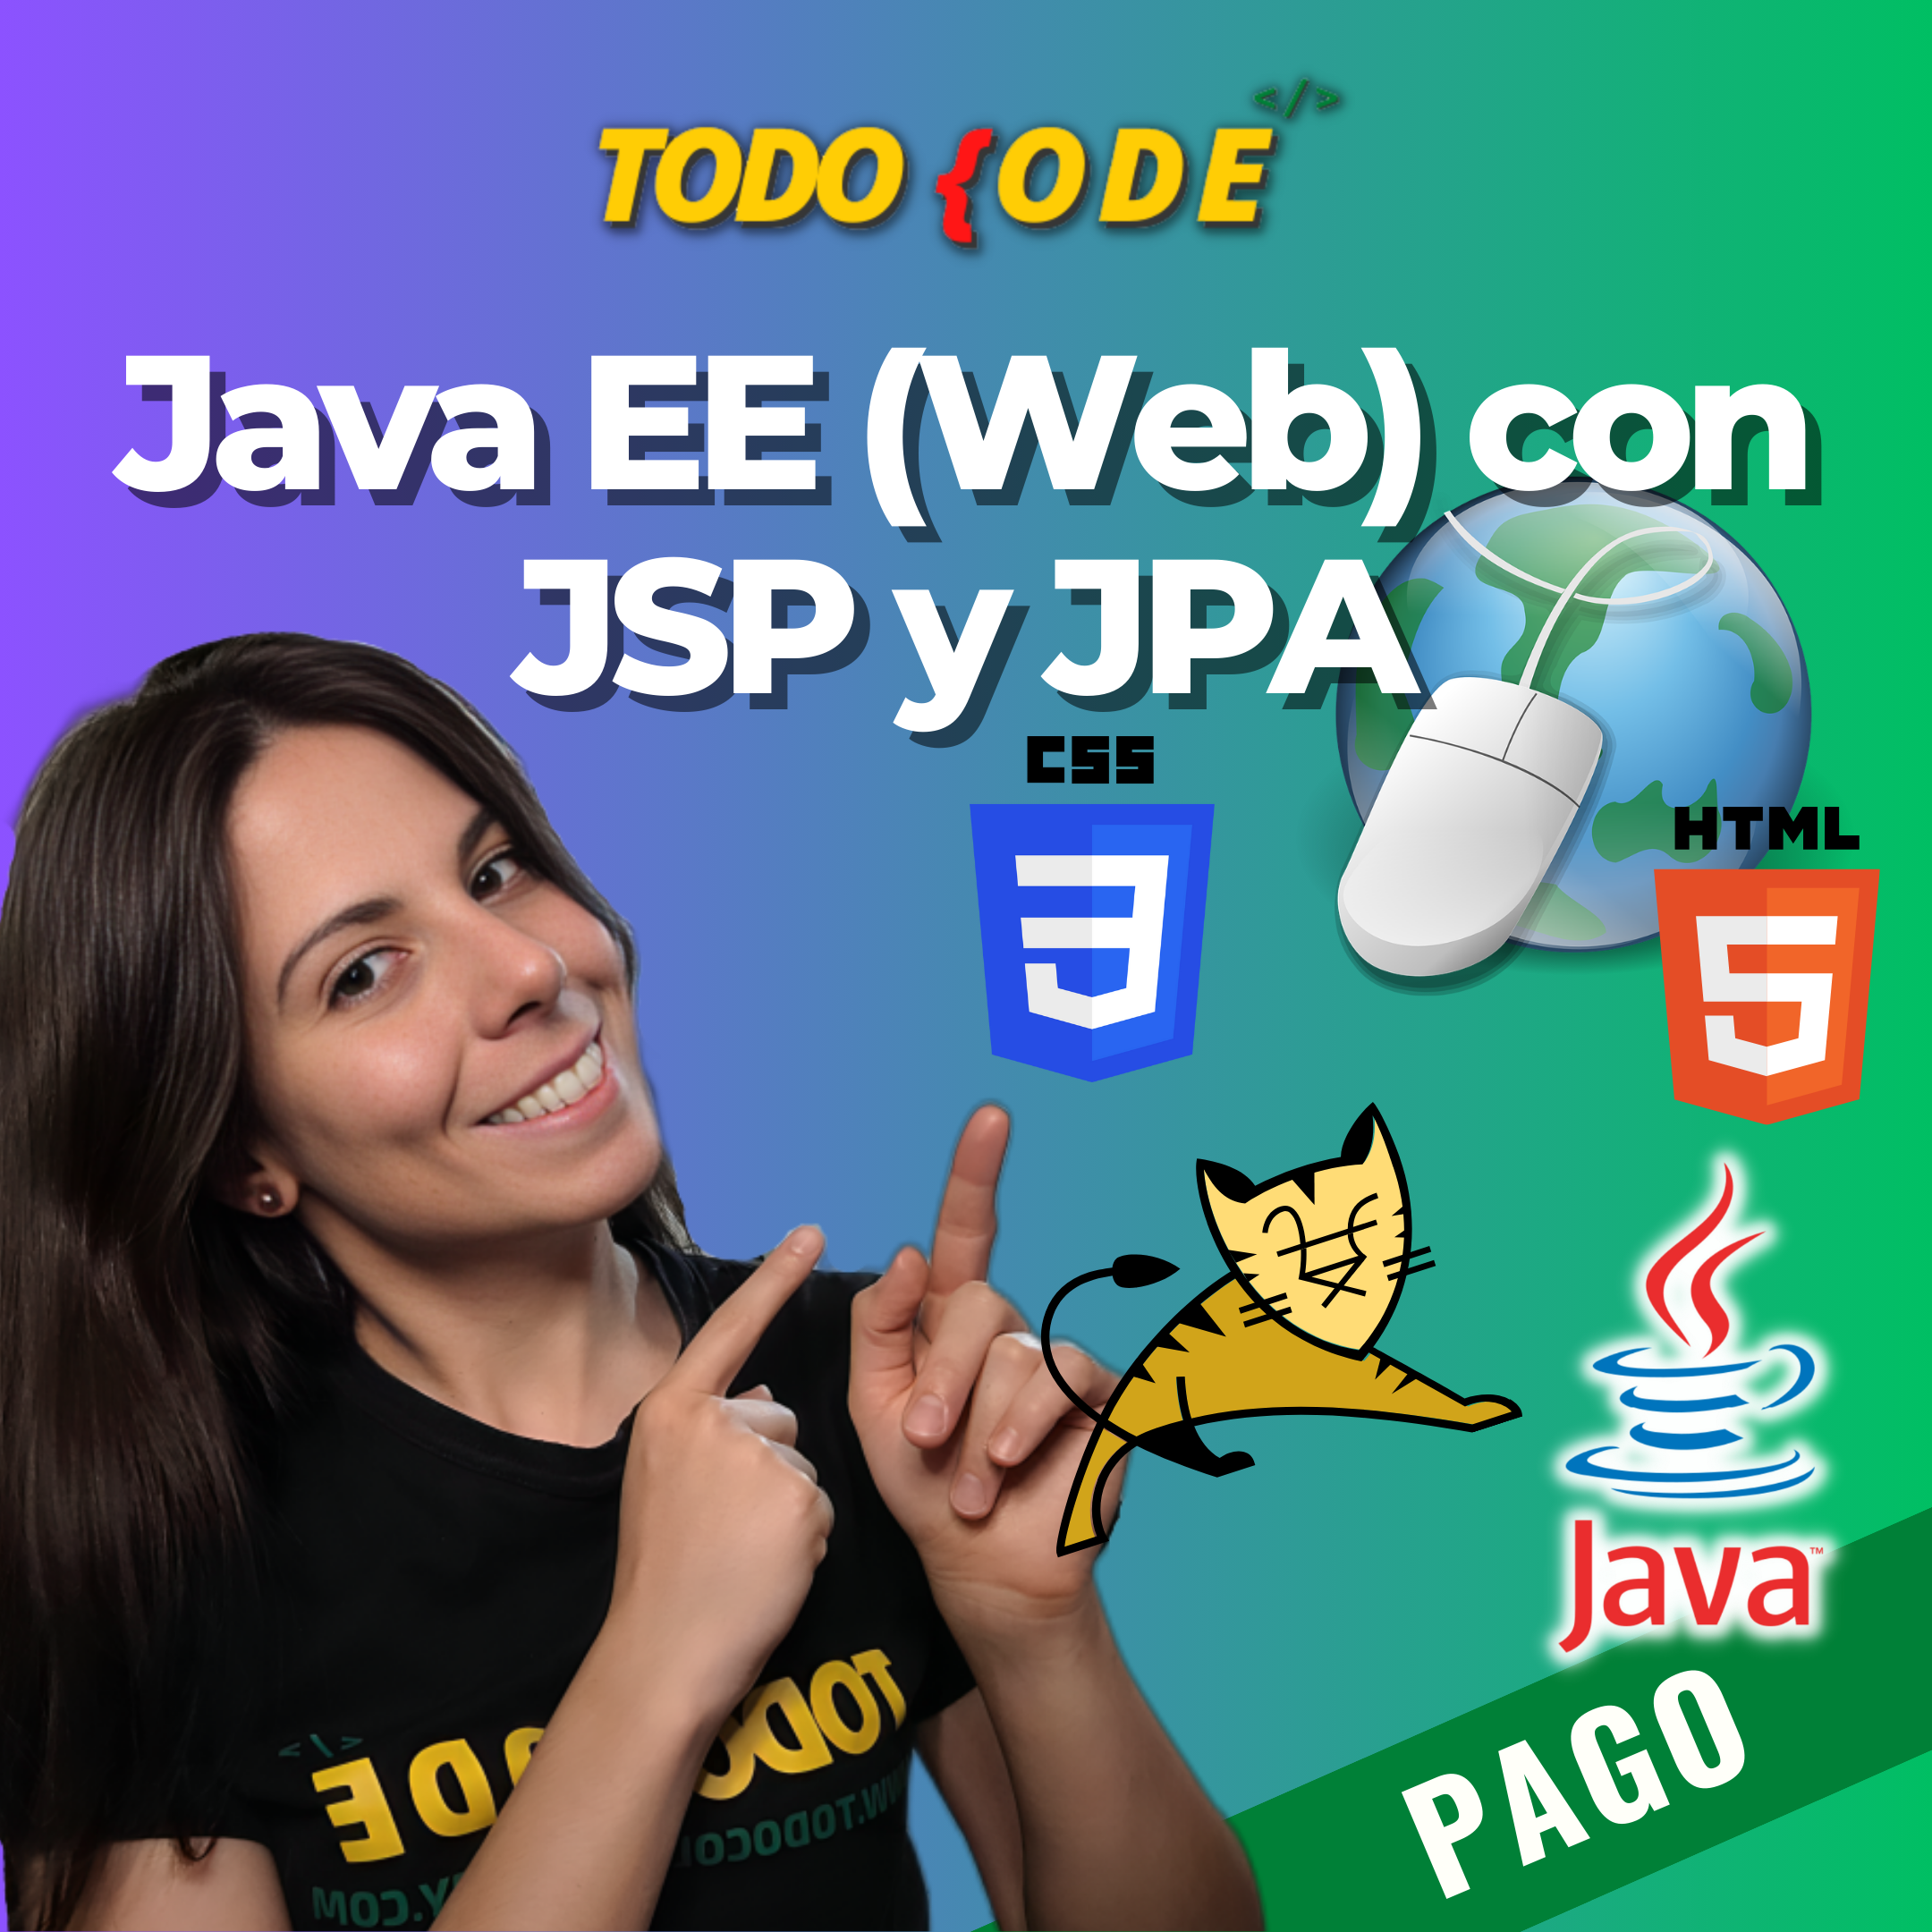 Java Web con JSP y JPA